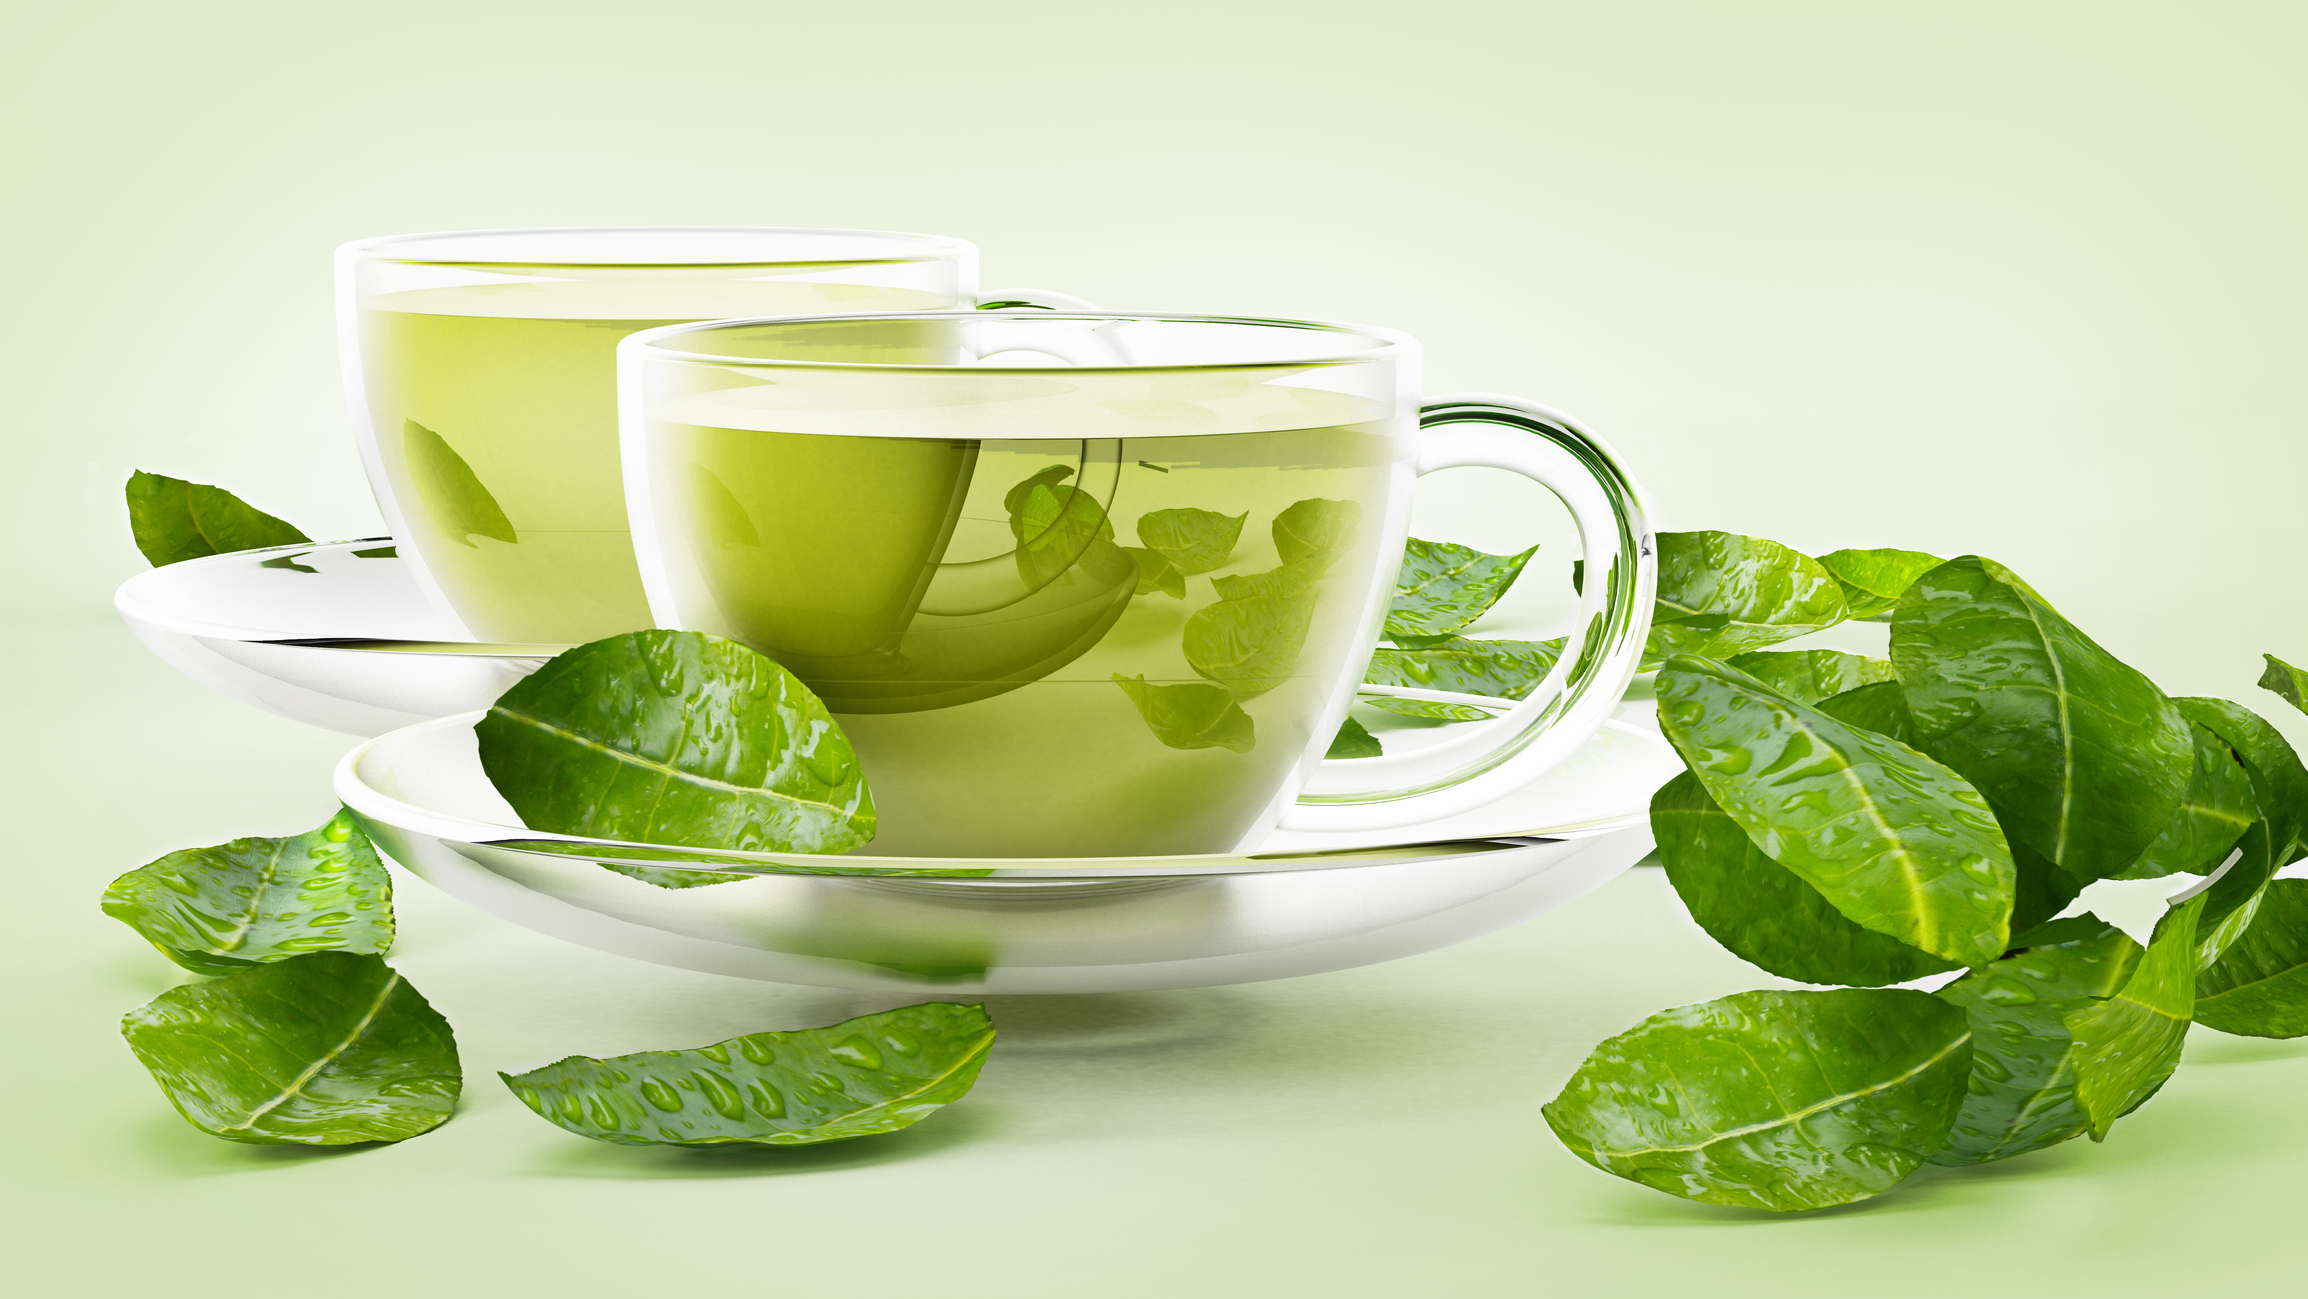 Weight loss: वजन और मोटापा कम करने के लिए पिएं Green Tea, जाने इसे पीने का सही समय